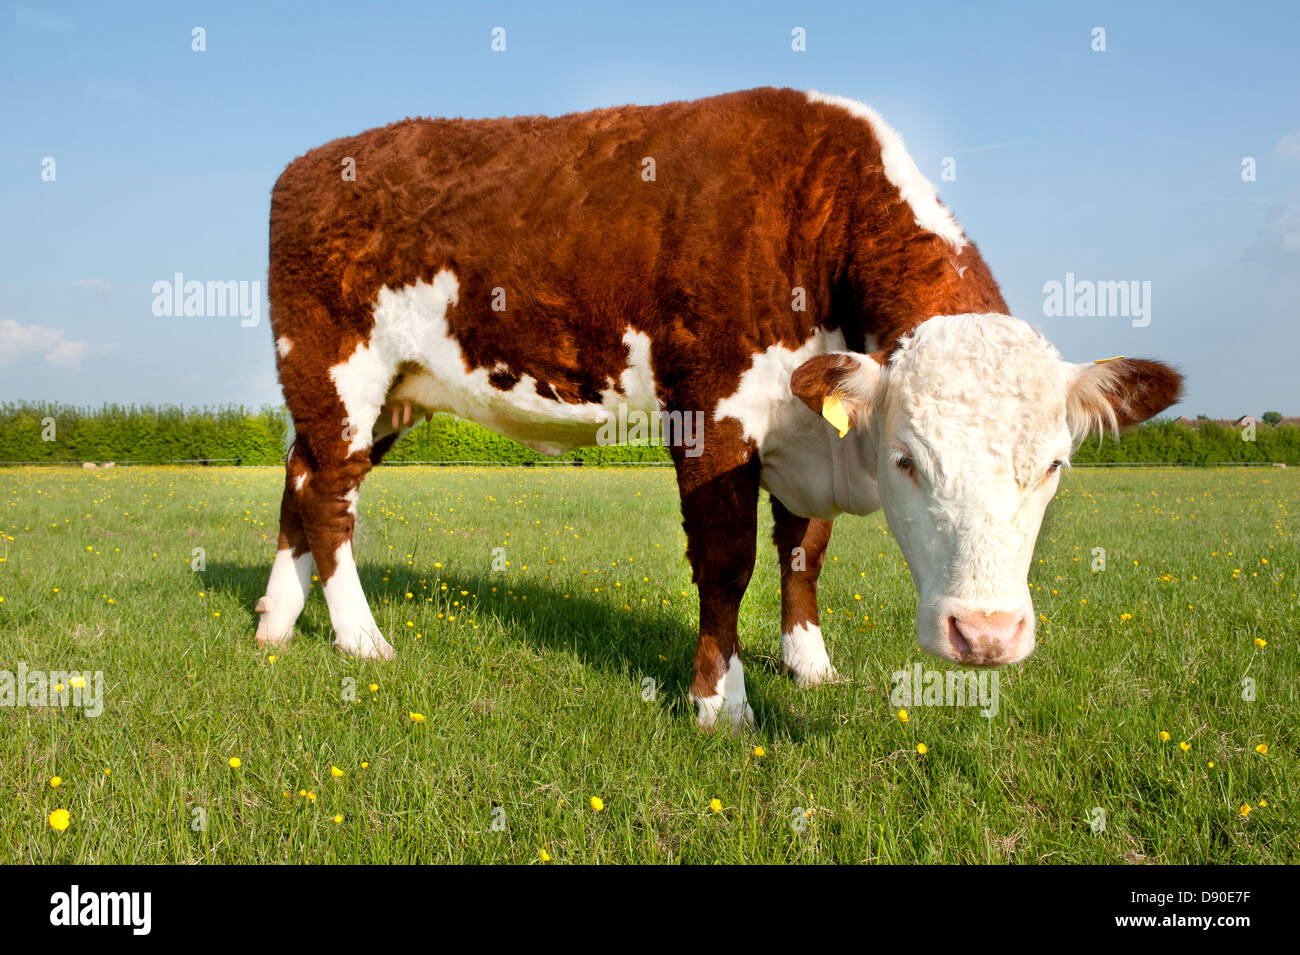 Une seule vache Hereford dans un champ d'herbe et renoncules Banque D'Images